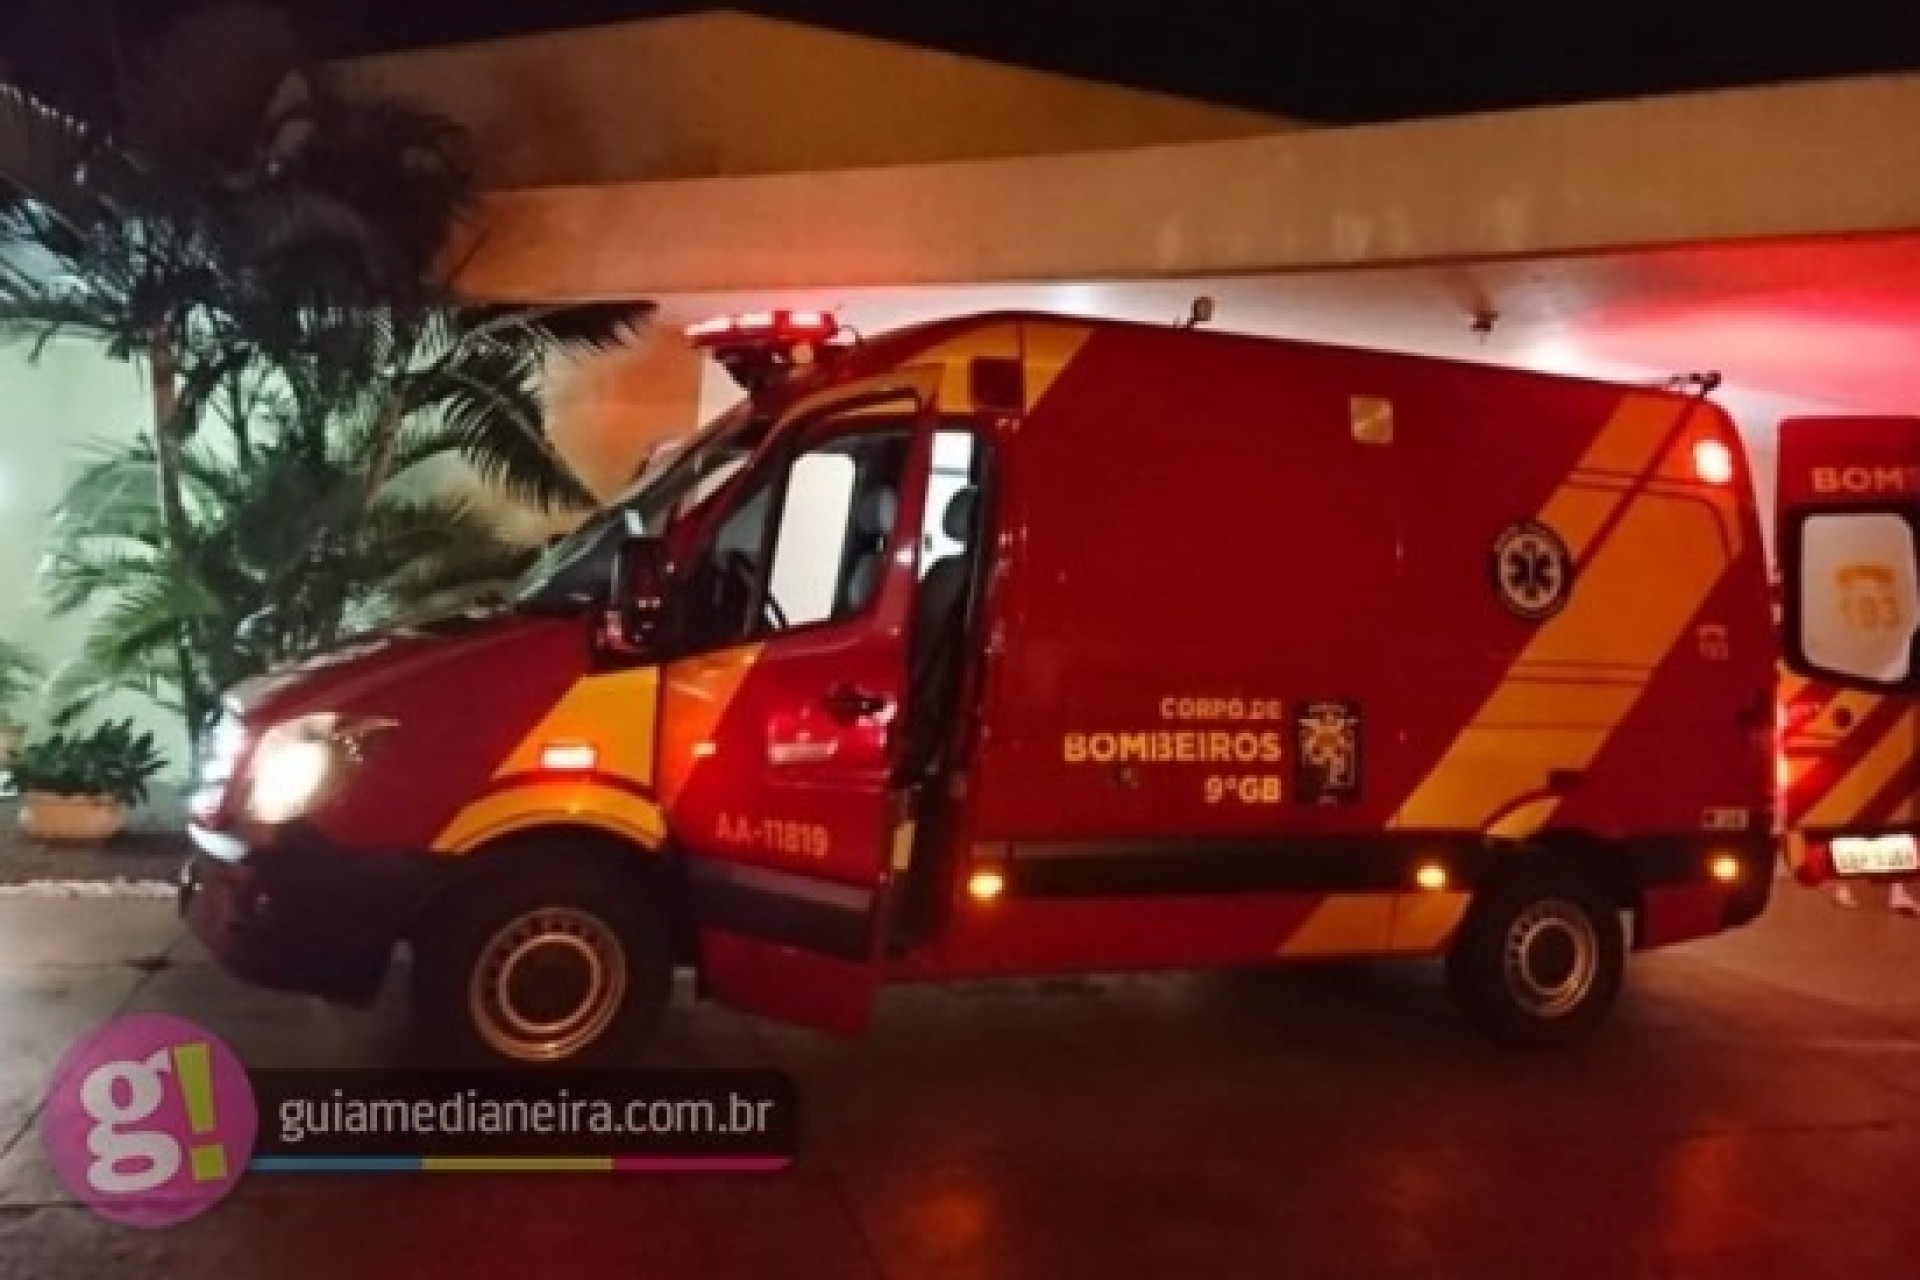 Morre no hospital mulher vítima de atropelamento na BR 277 em Medianeira